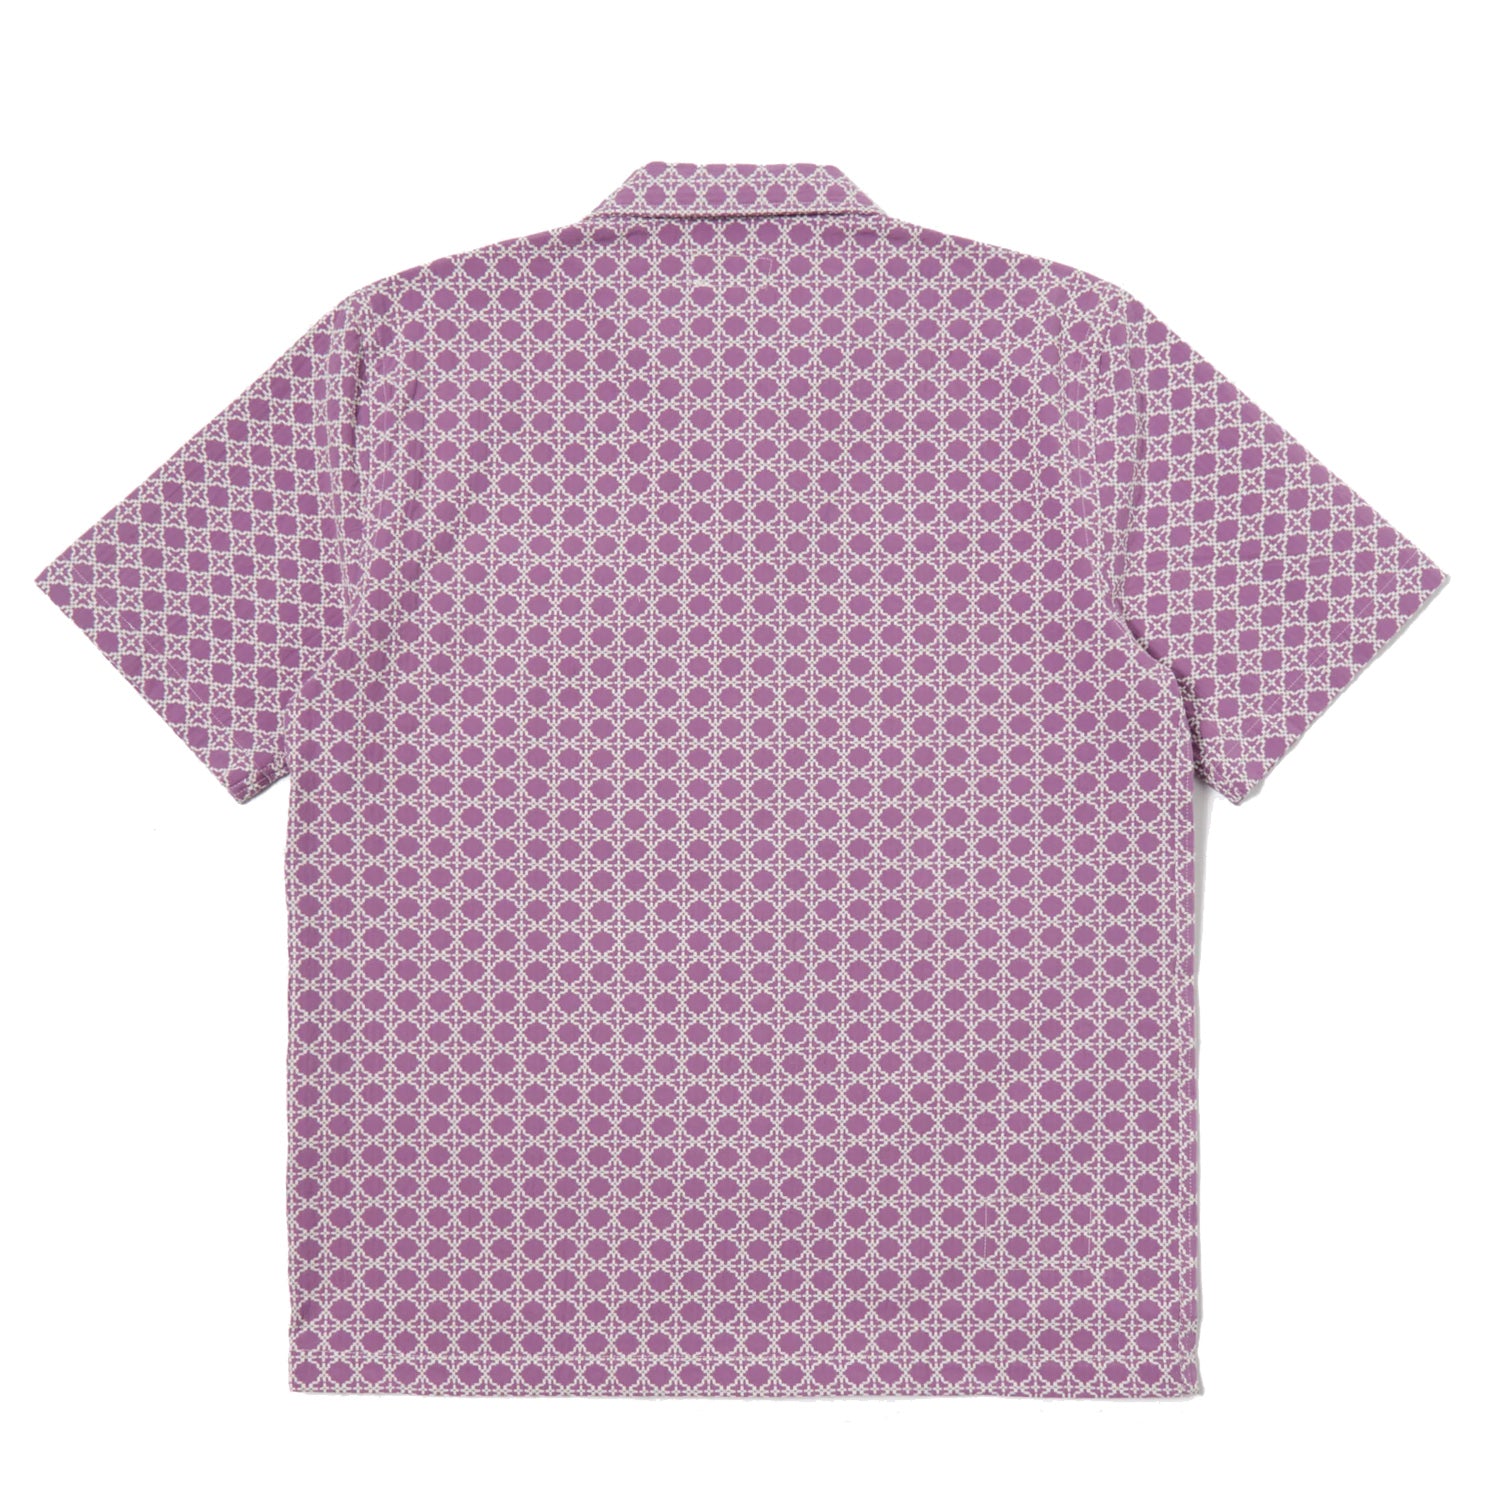 Road Shirt - Tile 1 Cotton